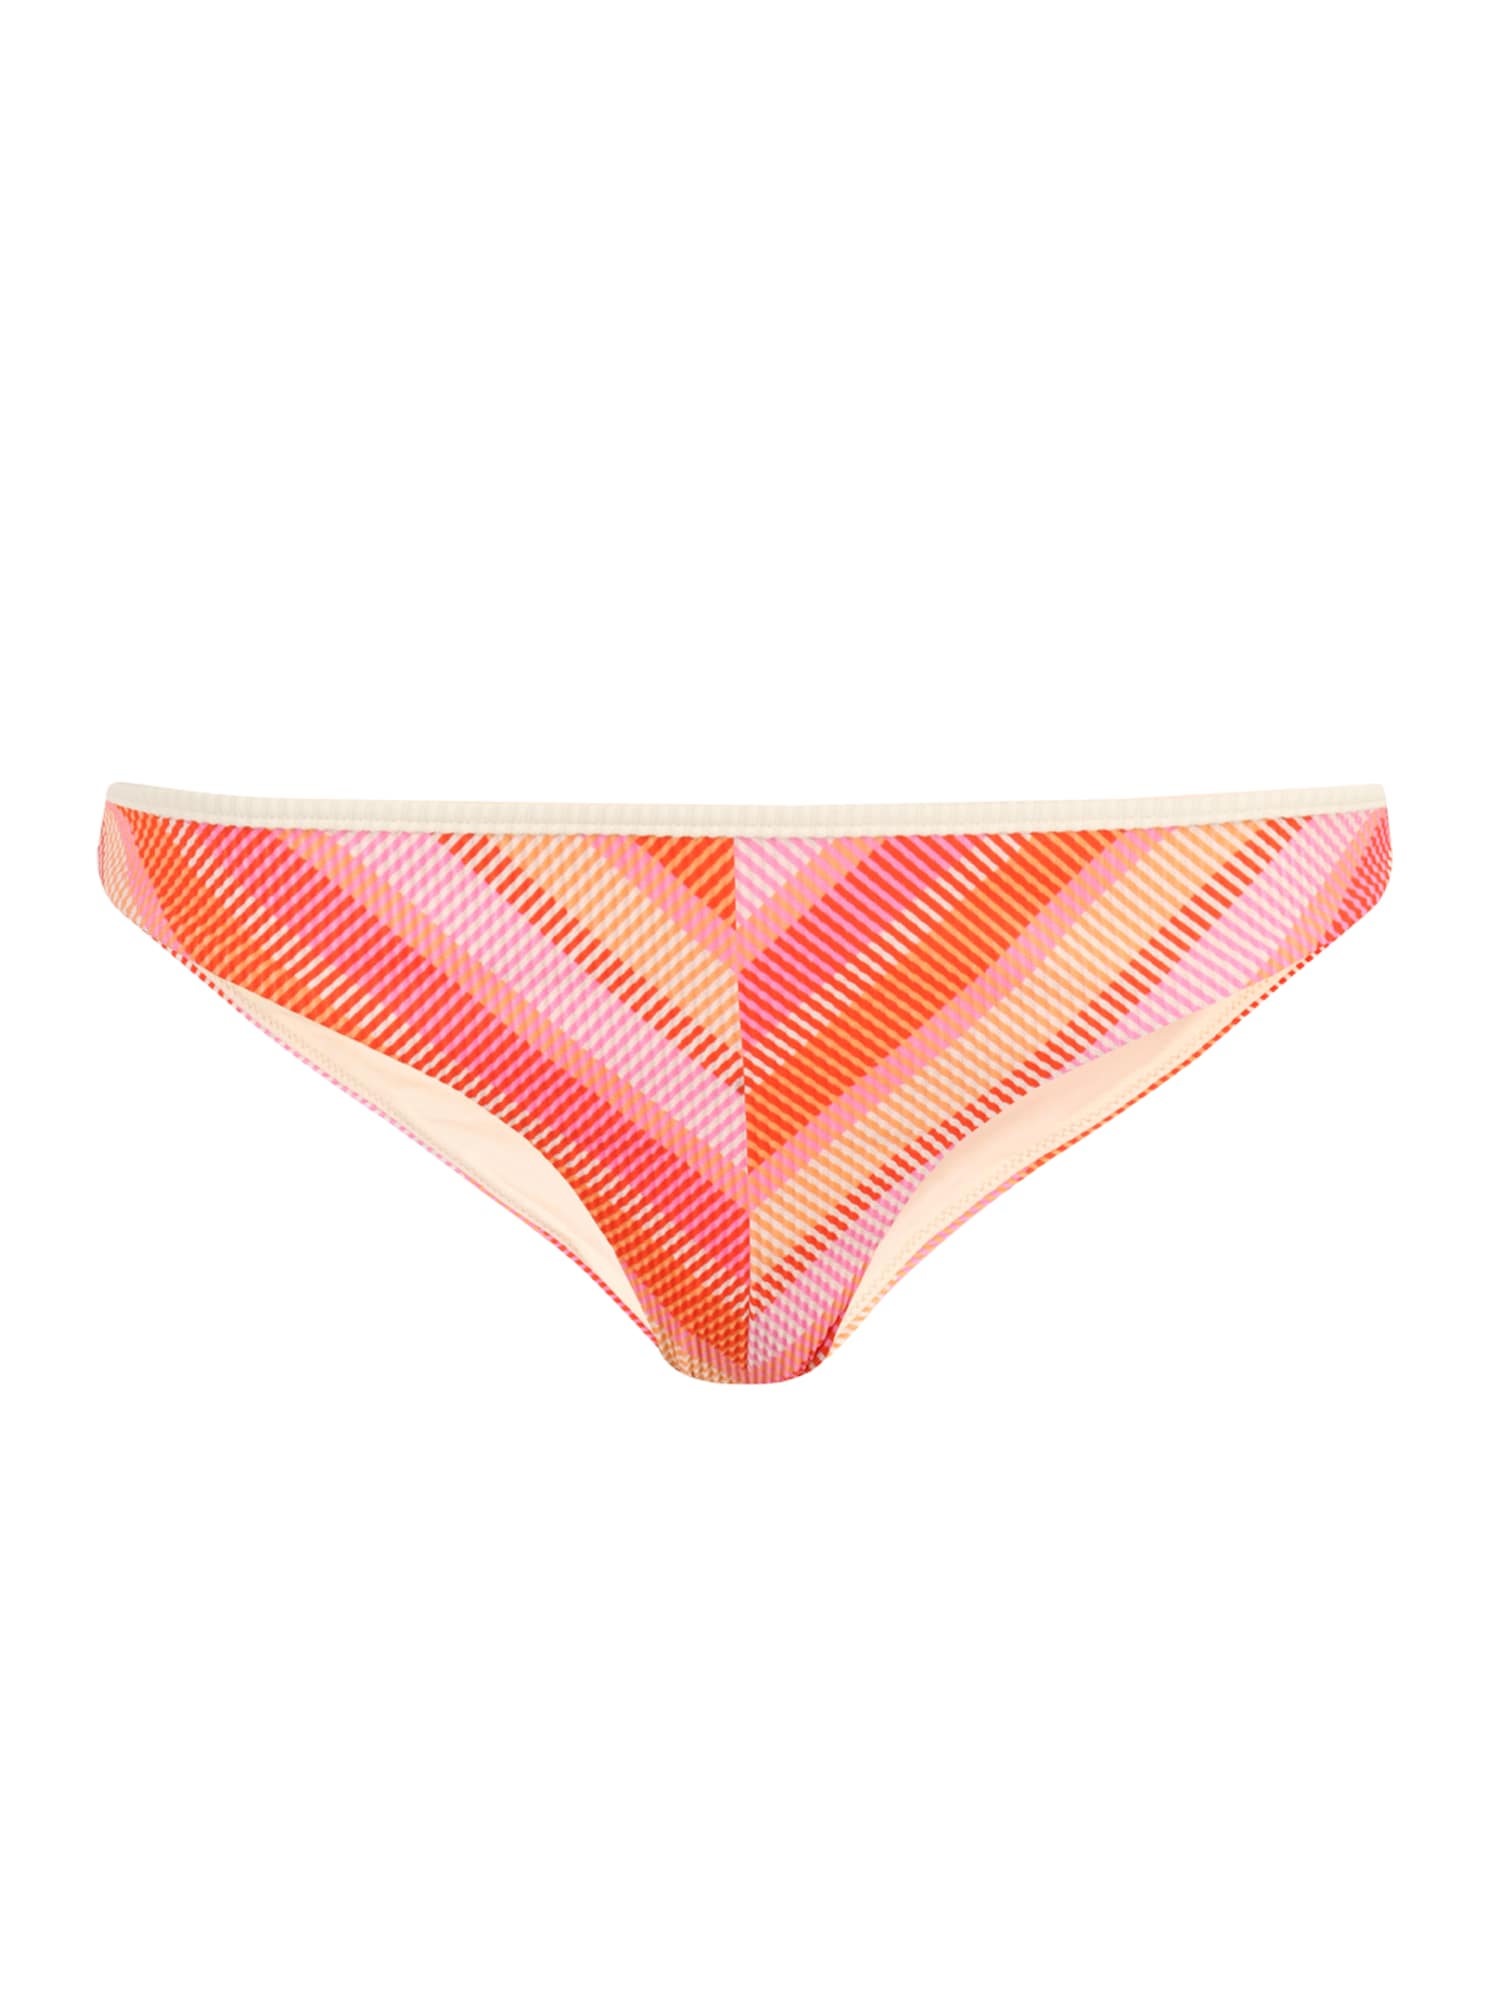 RIP CURL Bikinio kelnaitės 'SUN RAYS' rožinė / tamsiai oranžinė / oranžinė-raudona / abrikosų spalva